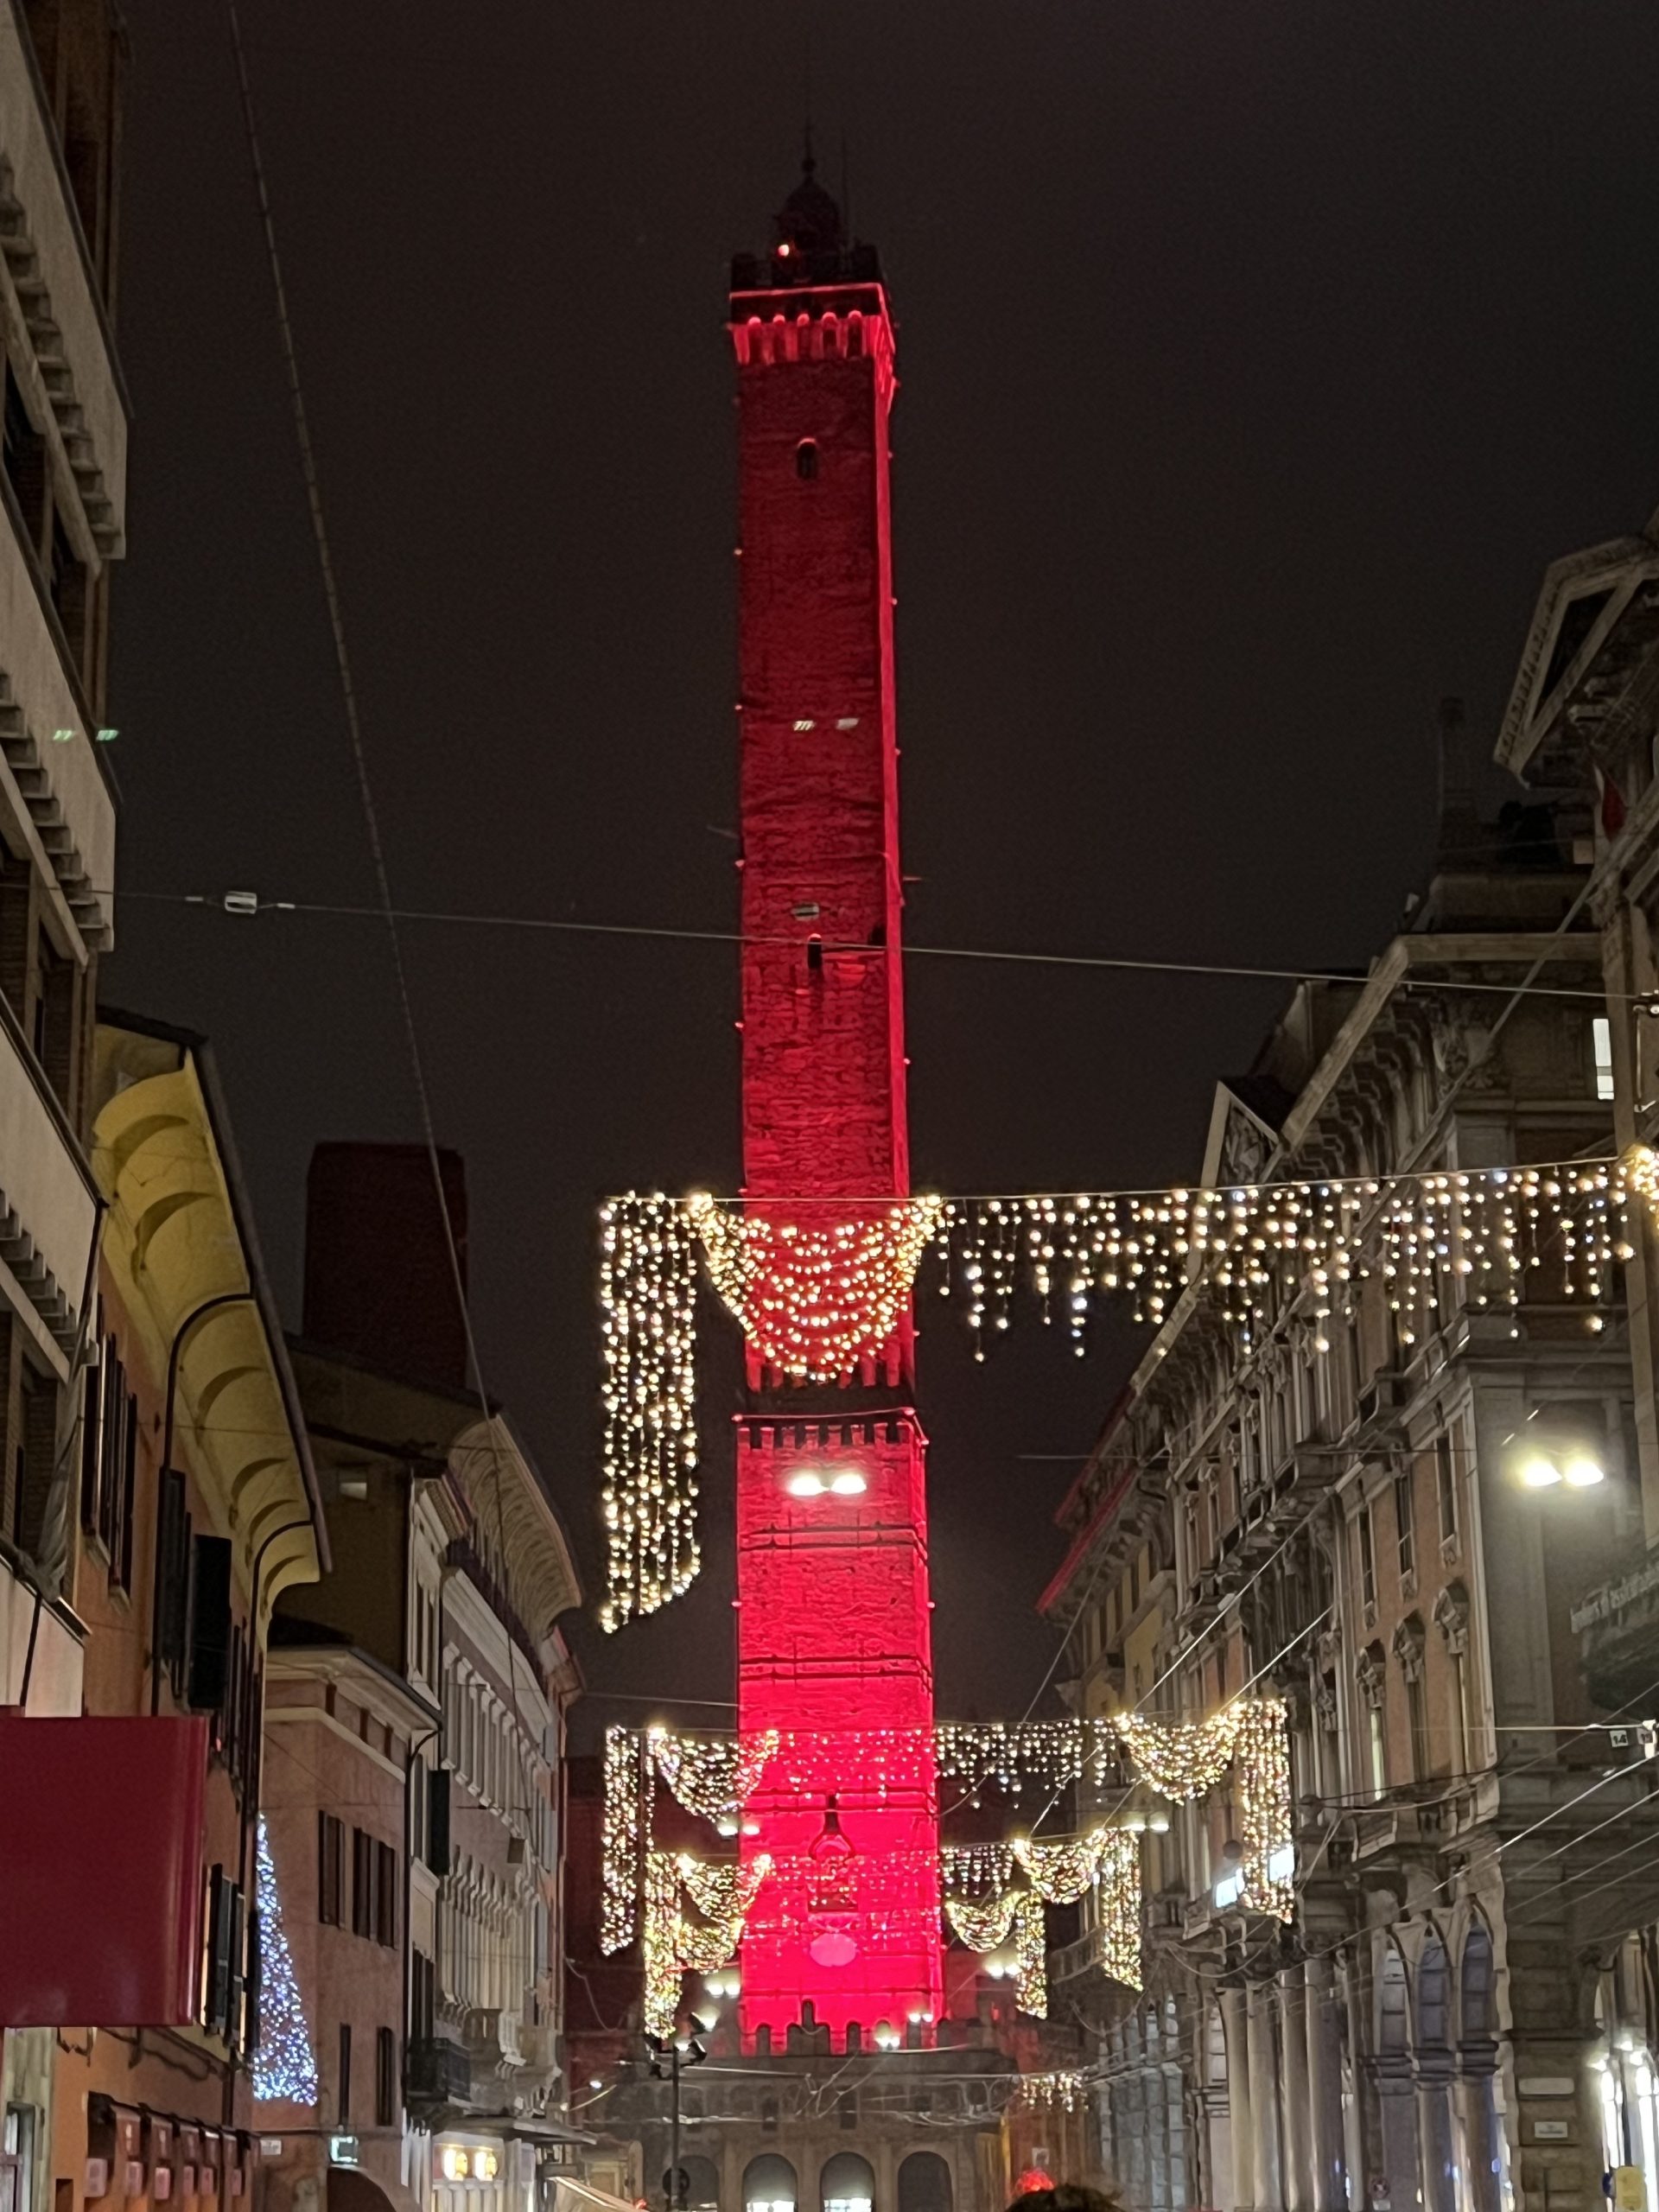 De noche, se recorta la silueta alargada y muy estilizada de la Torre Asinelli iluminada en rojo detrás de unas luces de navidad que cruzan la calle. Es Navidad 22